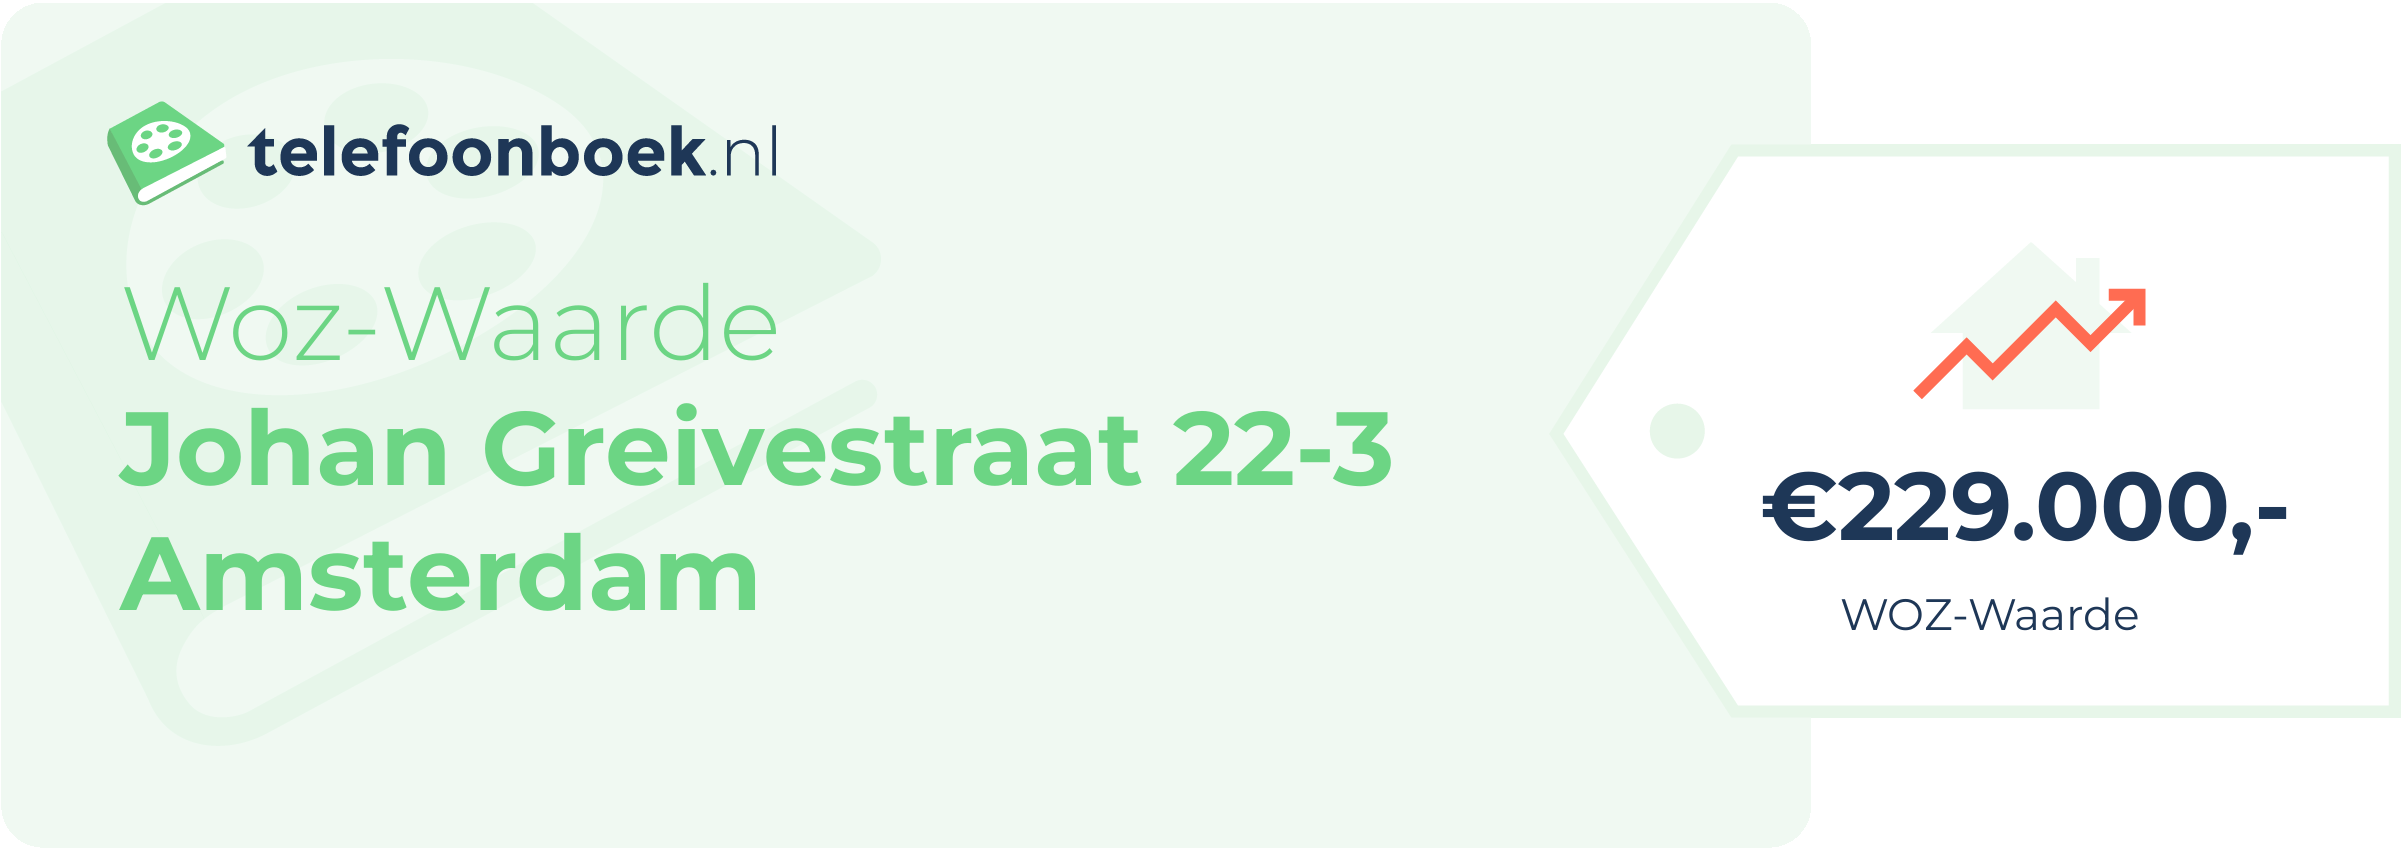 WOZ-waarde Johan Greivestraat 22-3 Amsterdam